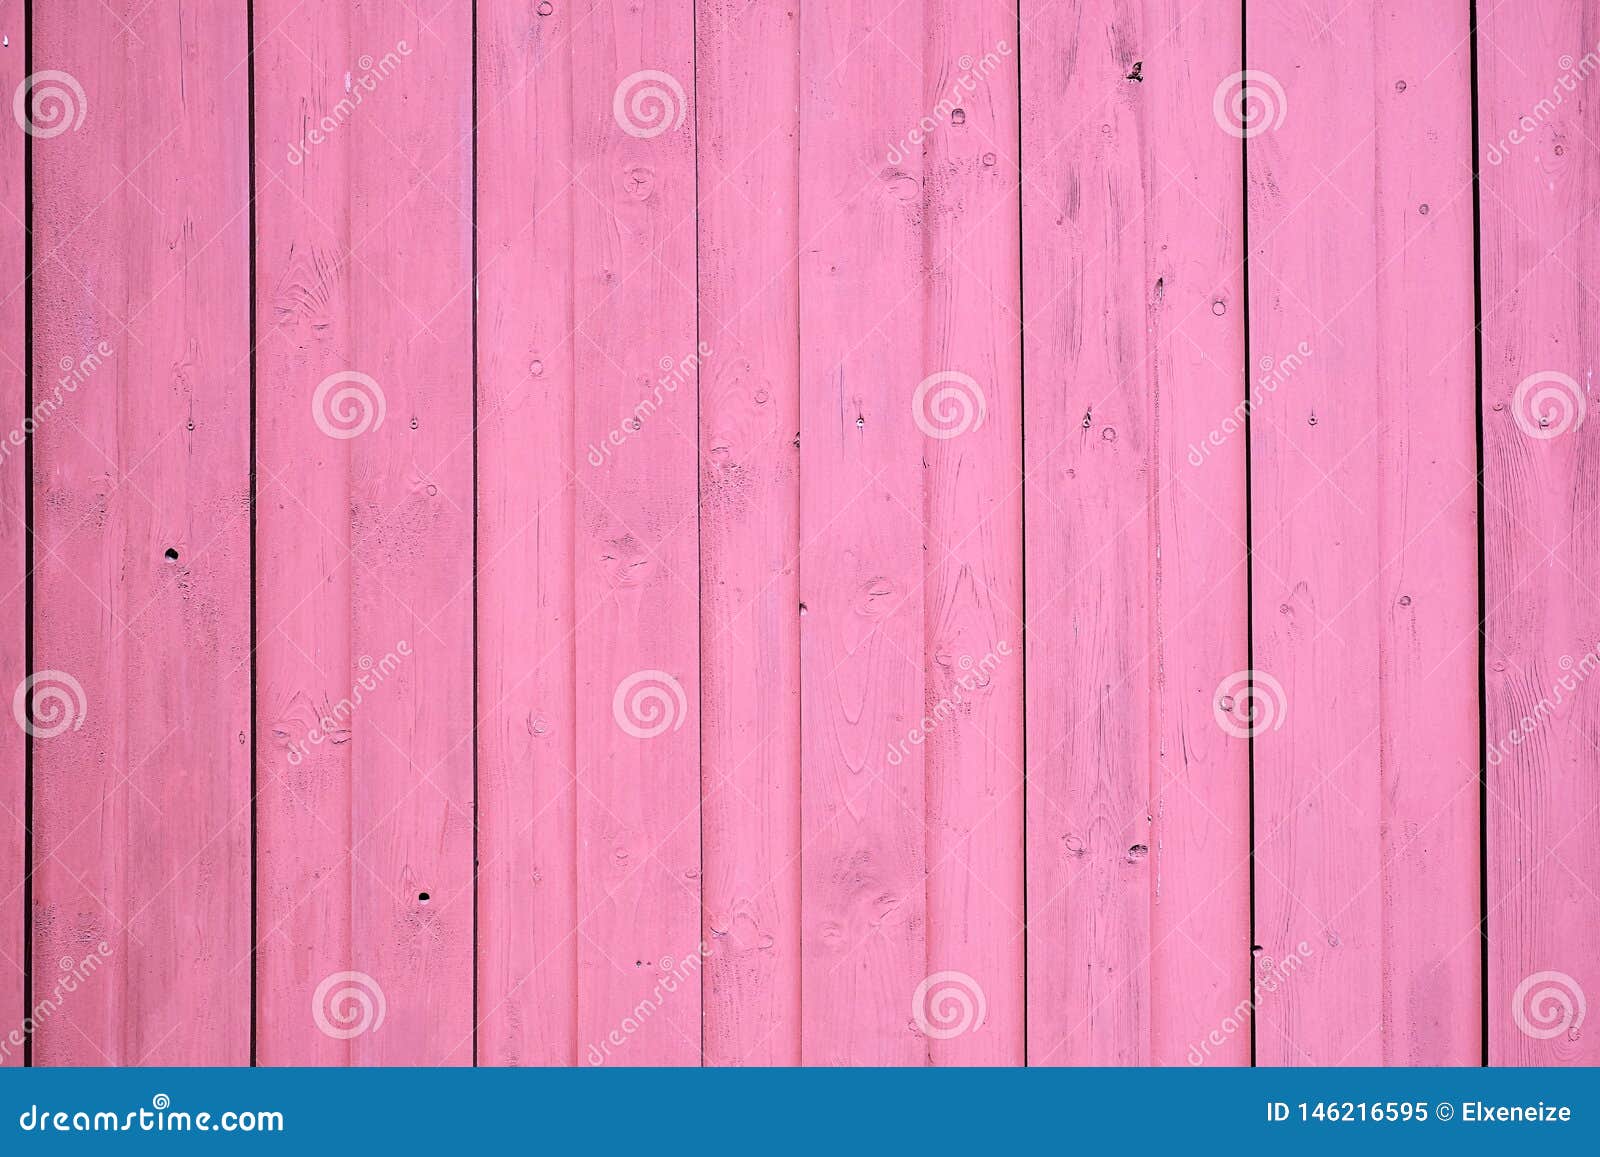 Hình nền hồng gỗ nổi sẽ giúp cho màn hình của bạn trở nên nổi bật và độc đáo. Với một màu hồng nhẹ nhàng, pha trộn với đốm gỗ nổi bật, hình ảnh này mang tới không gian ấm áp và tươi tắn. Bạn sẽ cảm nhận được vẻ đẹp truyền thống và hiện đại, đem lại cho màn hình của bạn một phong cách rất riêng.